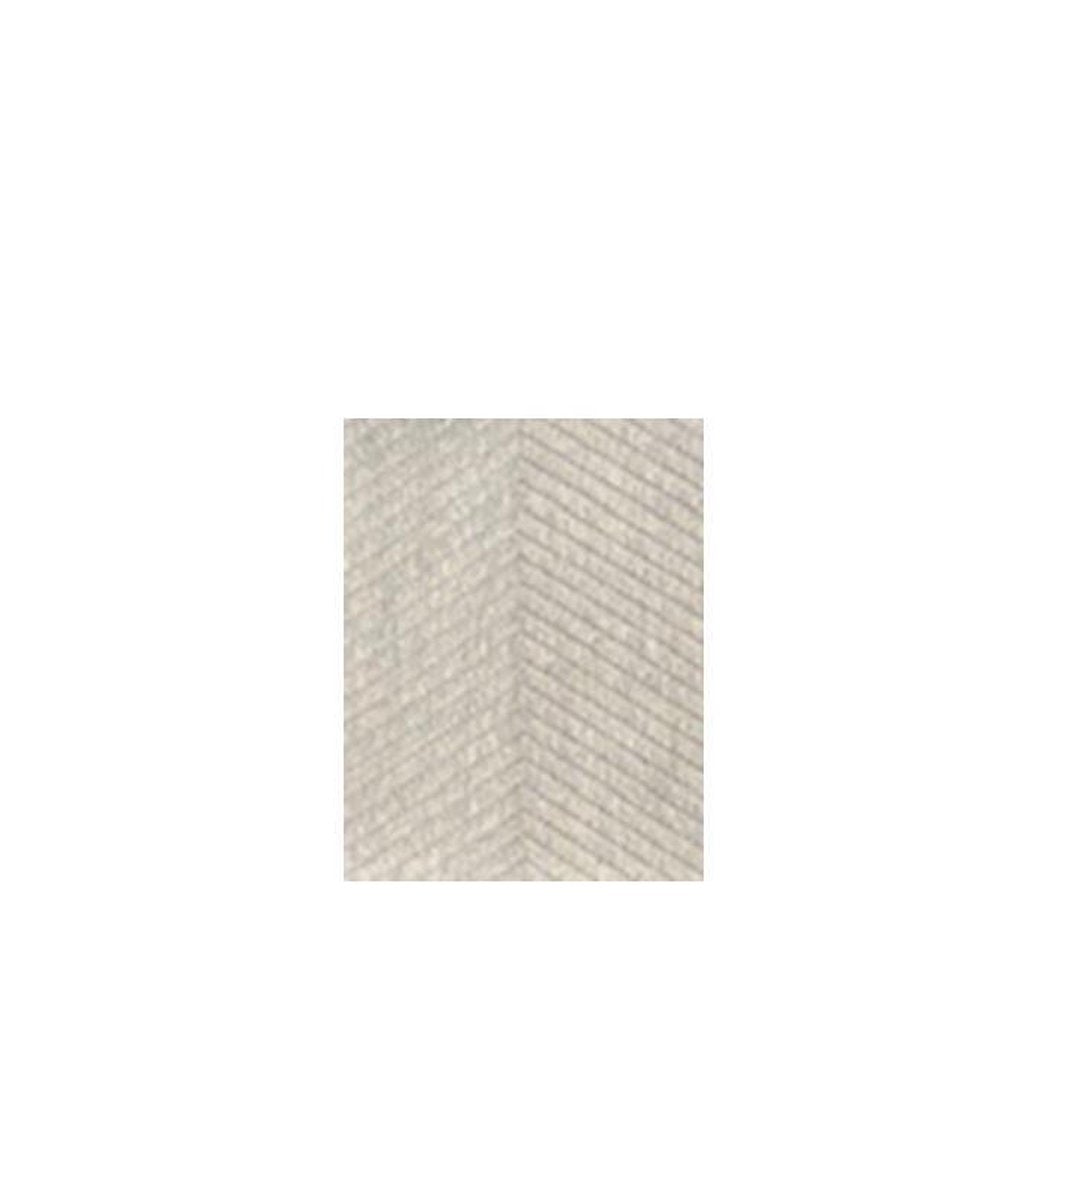 Tapis Exclusif Viva recto verso - tapis double face - antidérapant gratuit inclus - gris clair argent - 160/230 cm - tapis - rayé et chevrons